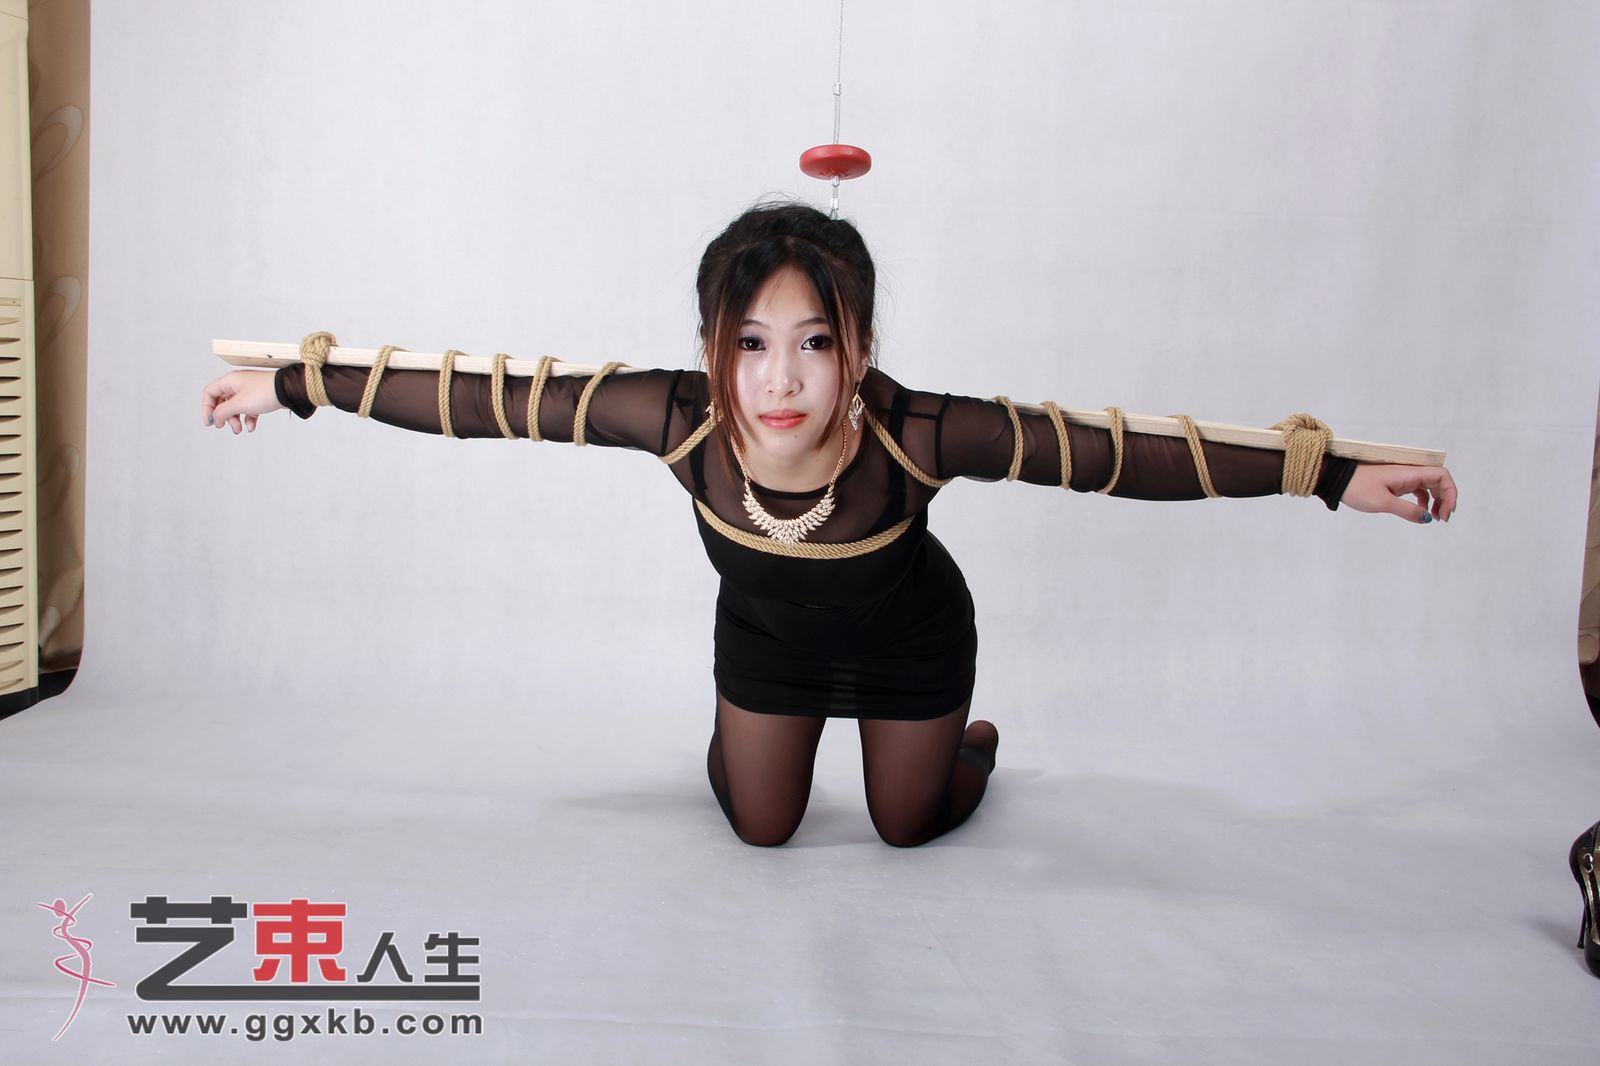 Chinese Art Rope Life 39